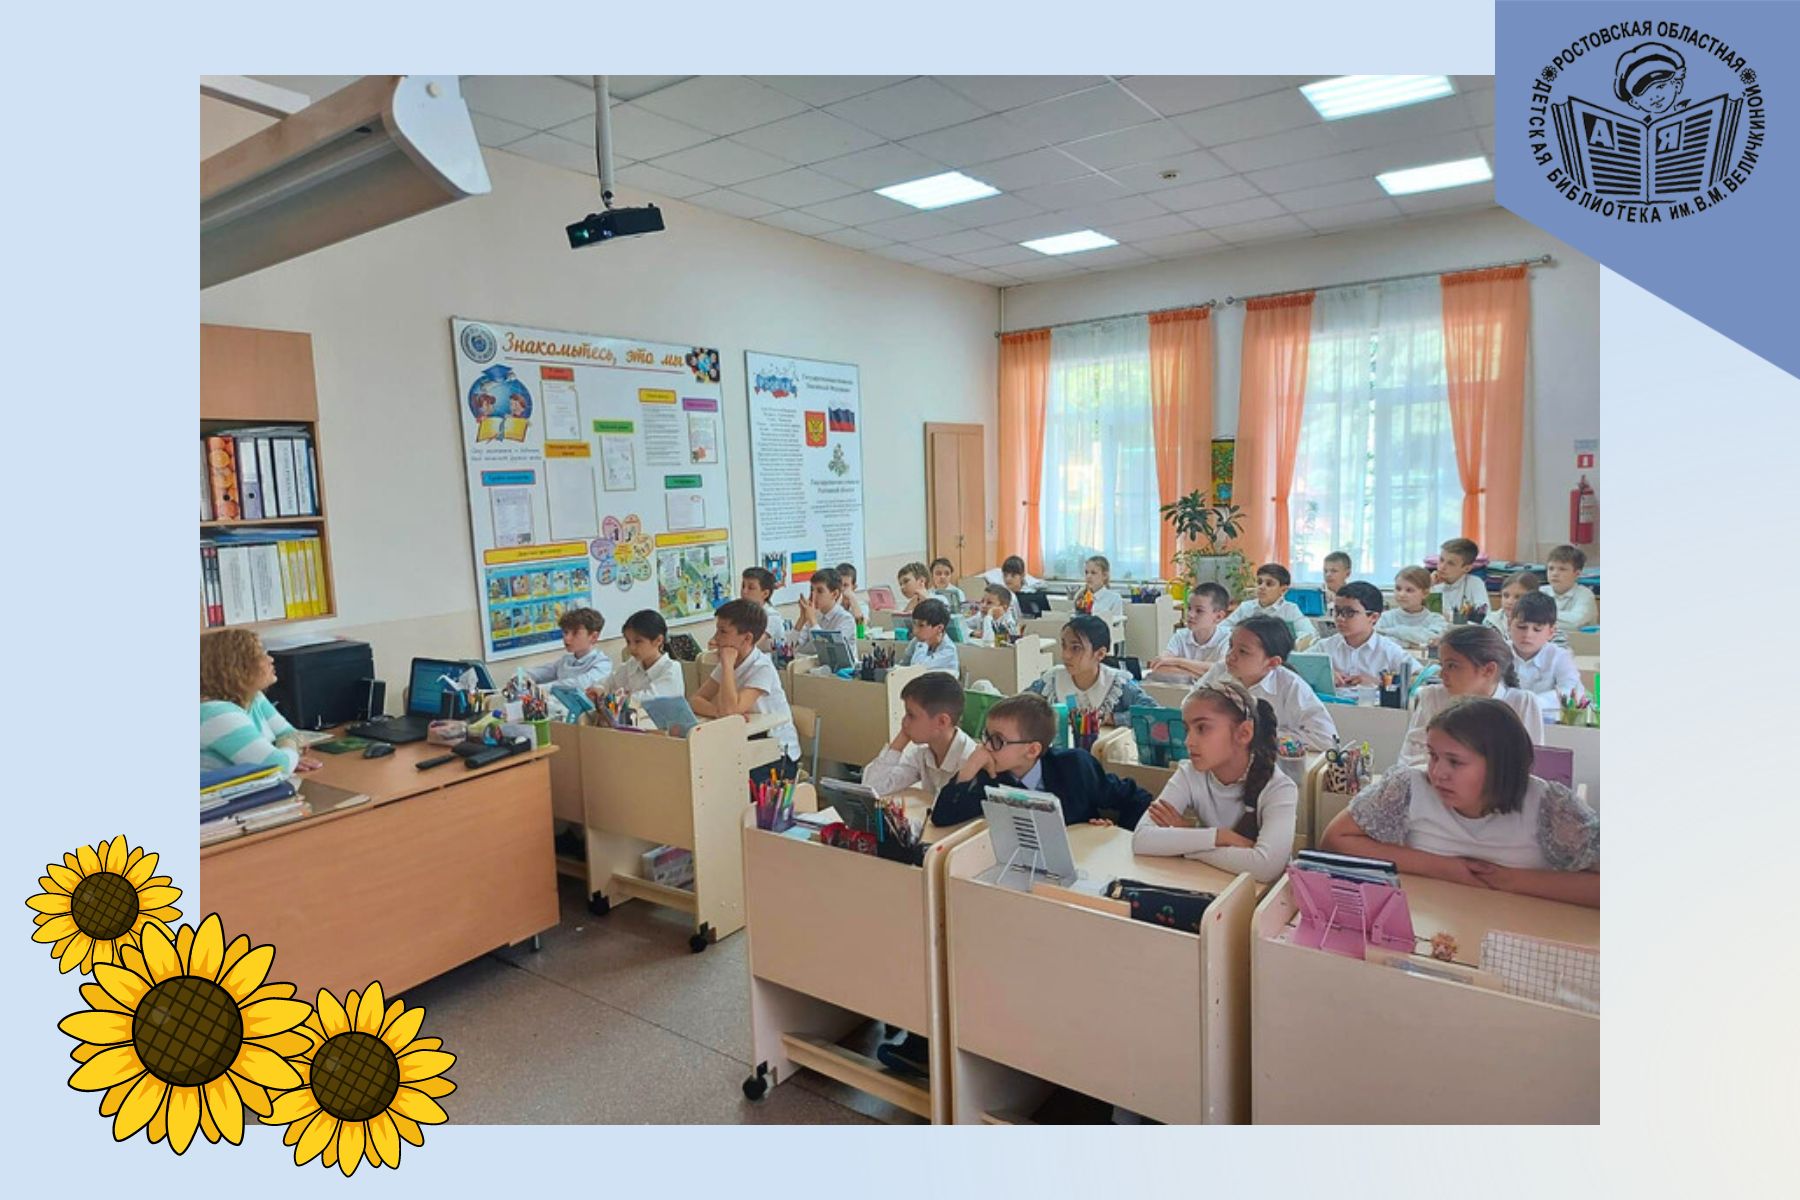 Специалисты Ростовской областной детской библиотеки имени В.М. Величкиной провели мероприятия, посвящённые дню рождения Михаила Шолохова